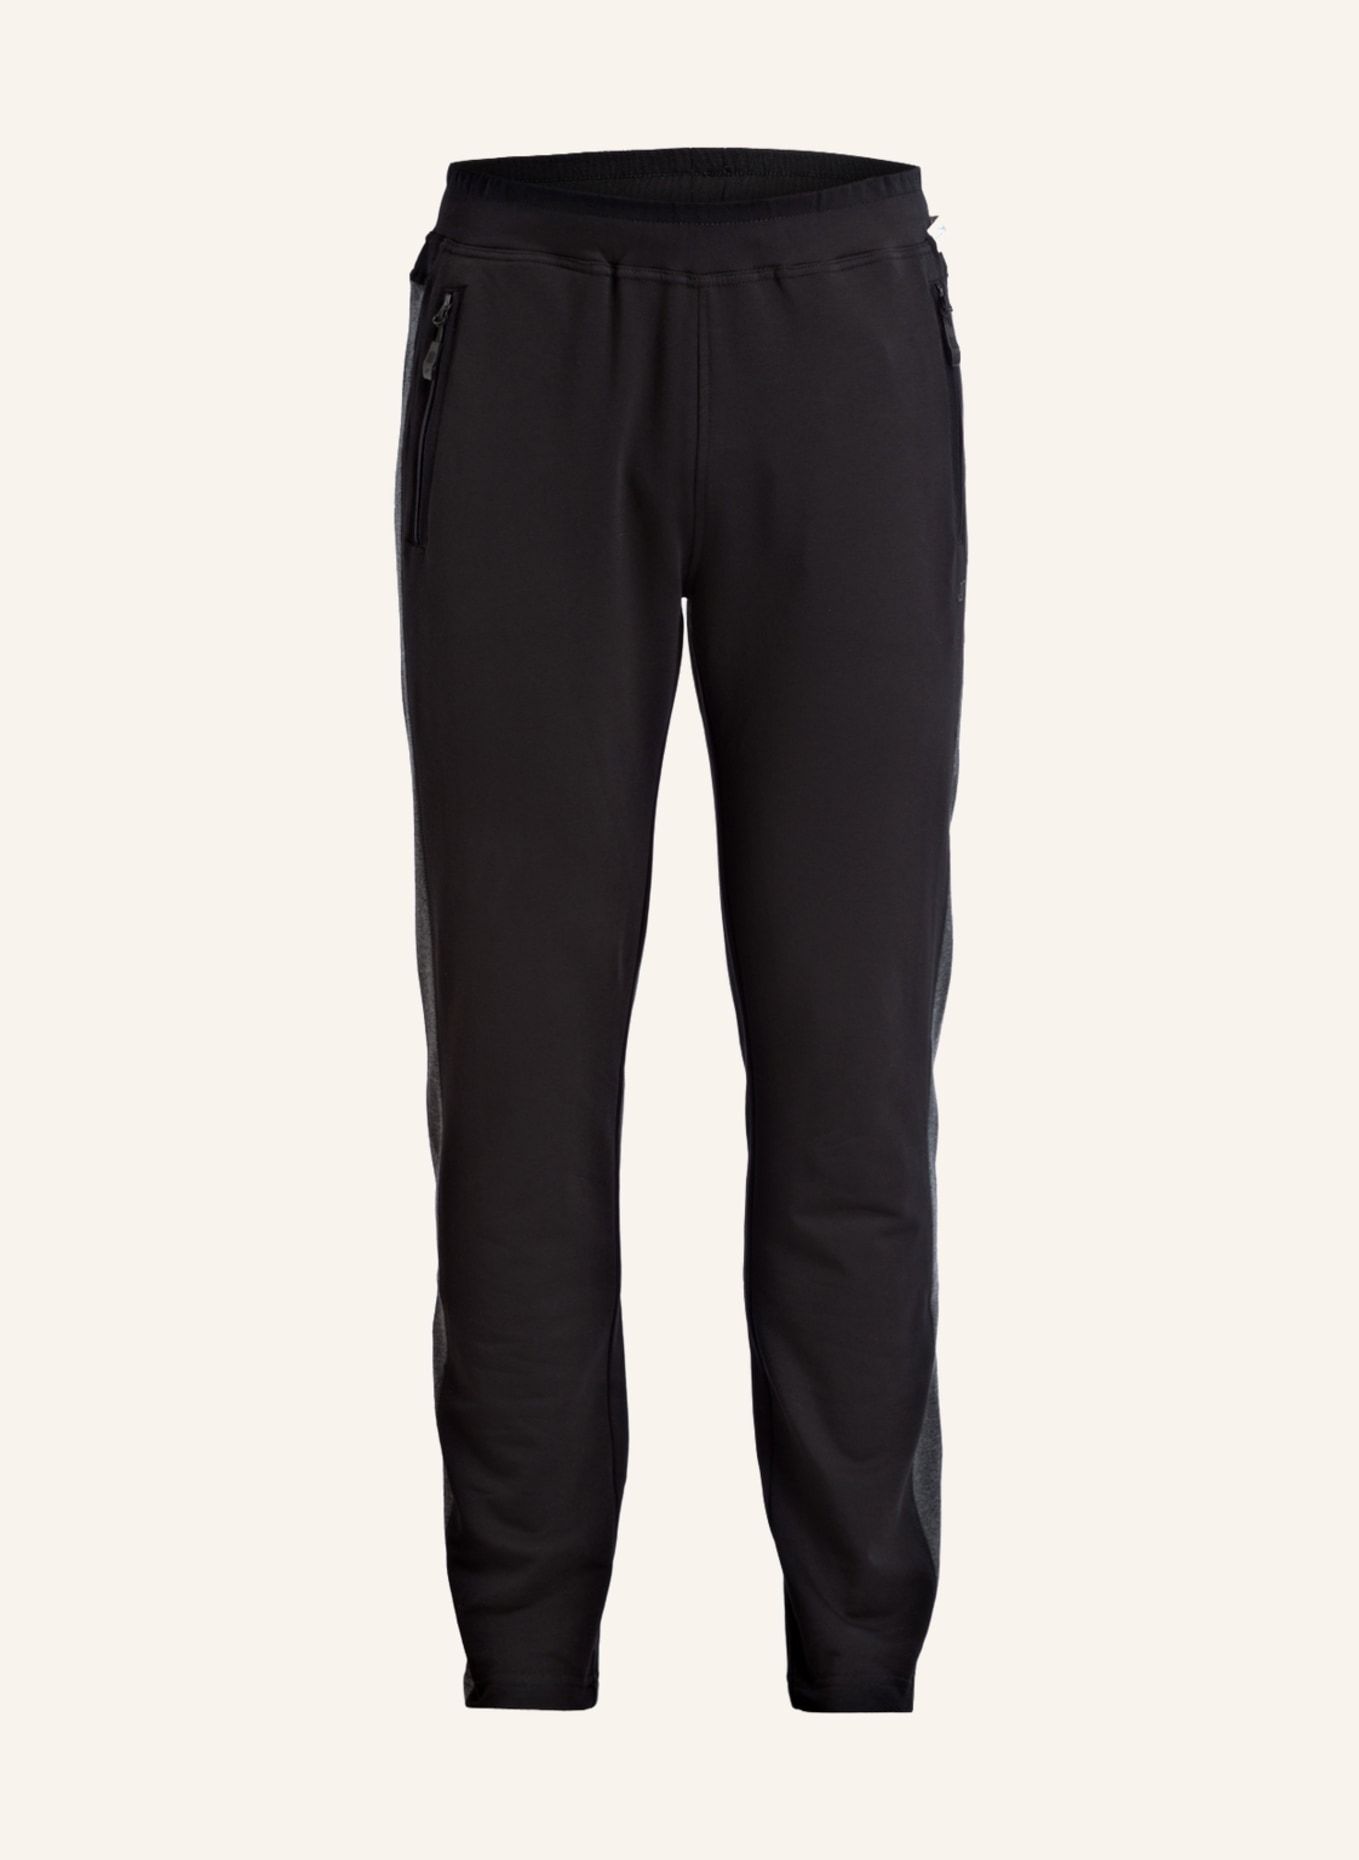 JOY sportswear Sweatpants FERNANDO, Farbe: SCHWARZ (Bild 1)